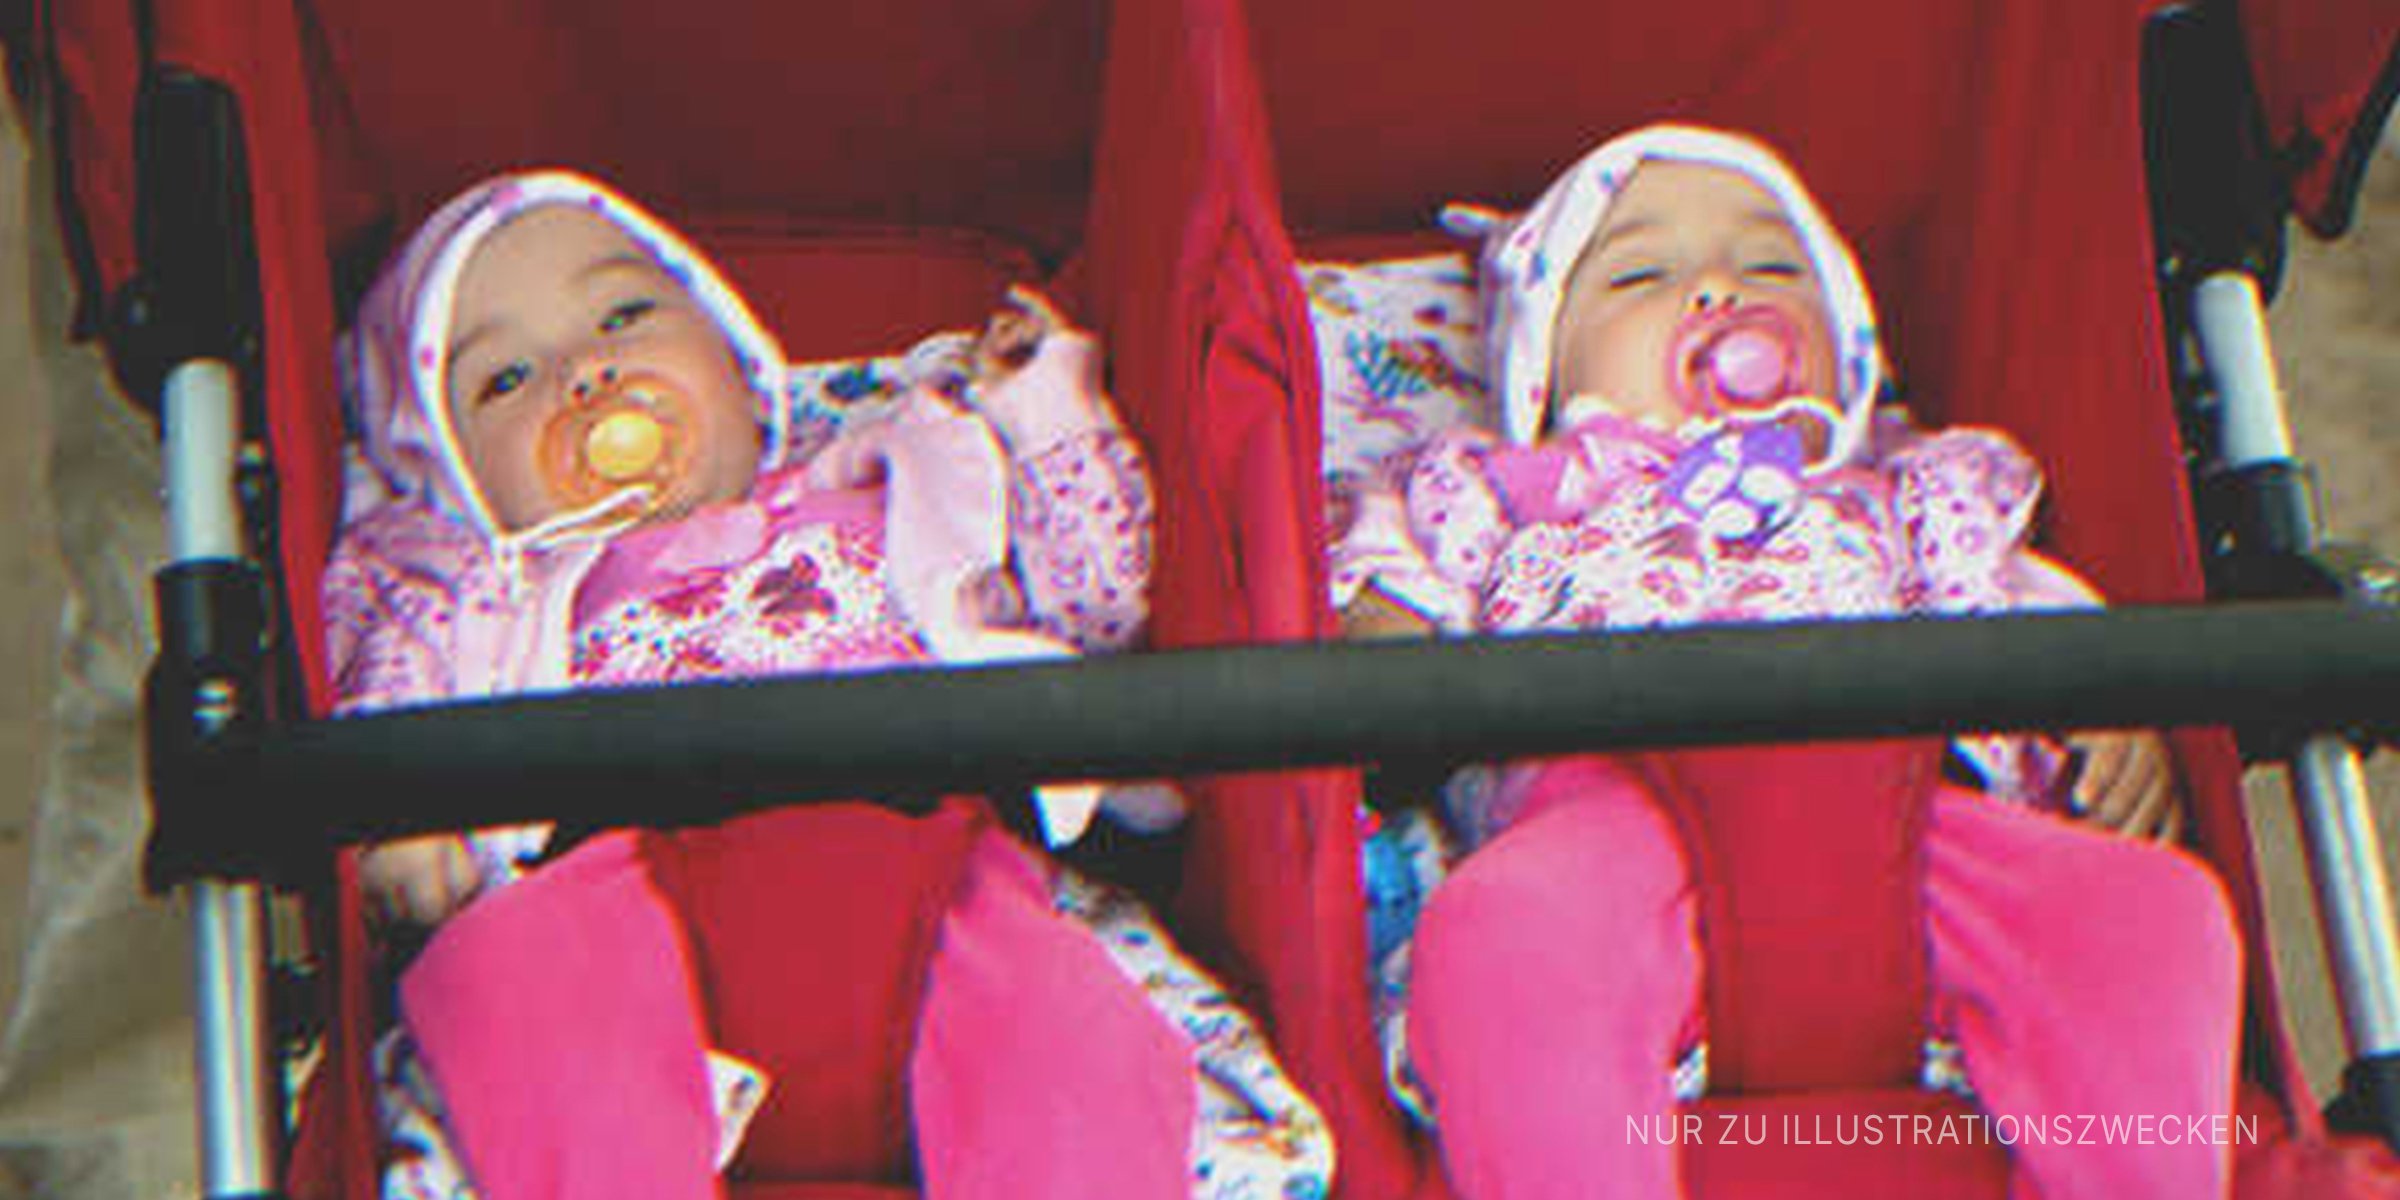 Zwillinge in einem Kinderwagen. | Quelle: Shutterstock